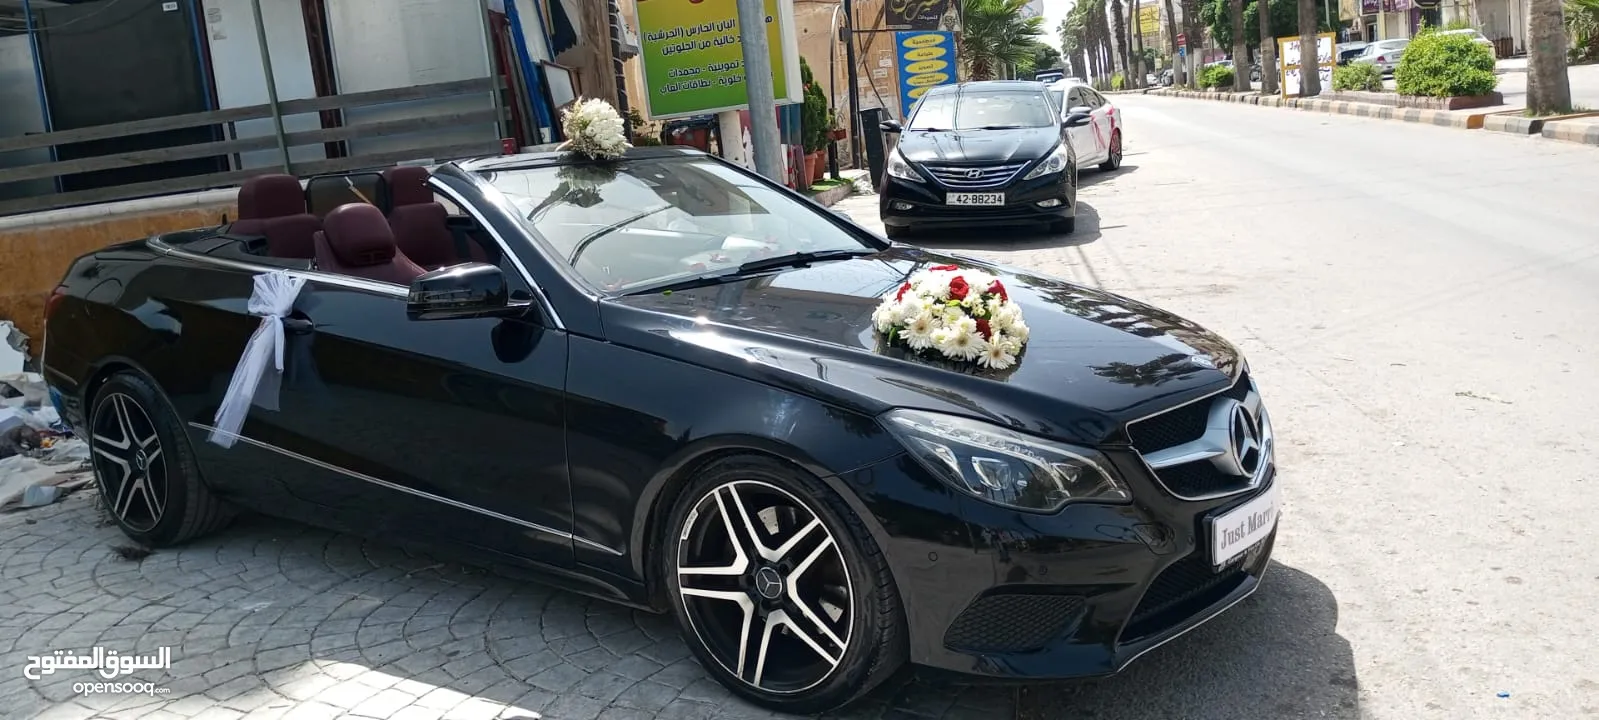 الورود لتاجير المركبات في اربد لاند كروز و مرسيدس كشف للايجار